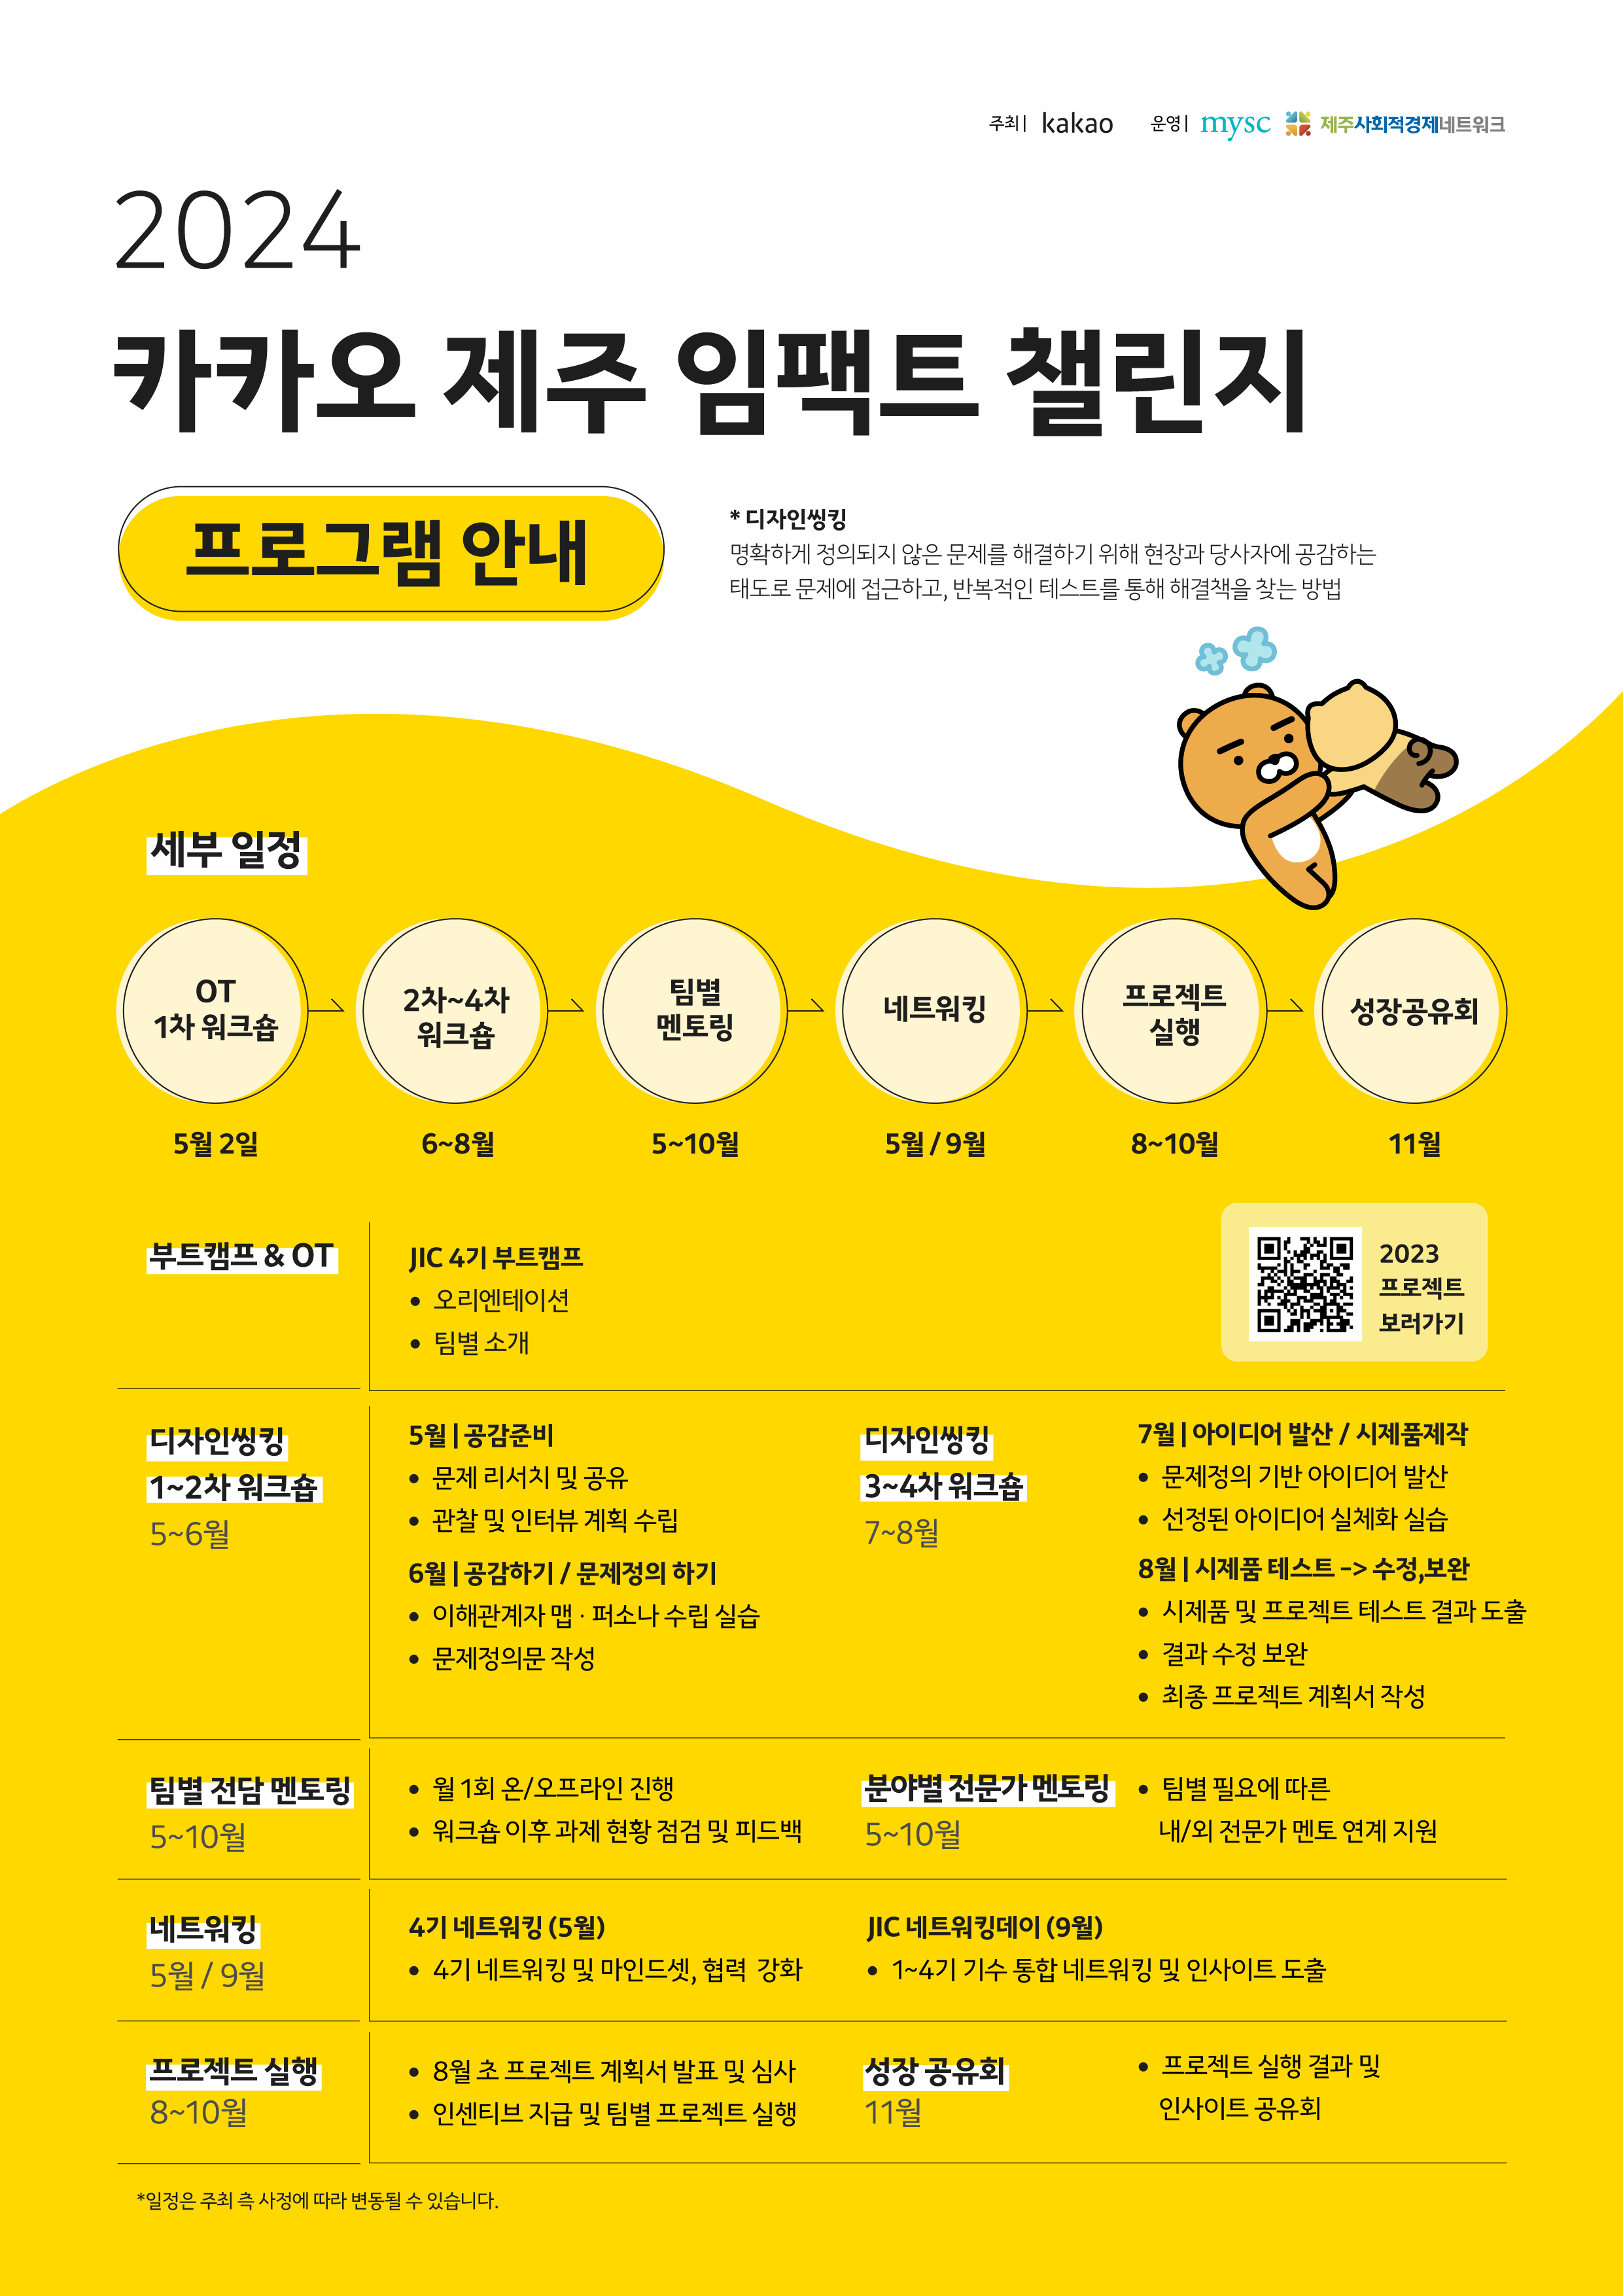 [kakao] '2024 카카오 제주 임팩트 챌린지’ 4기 참여팀 모집